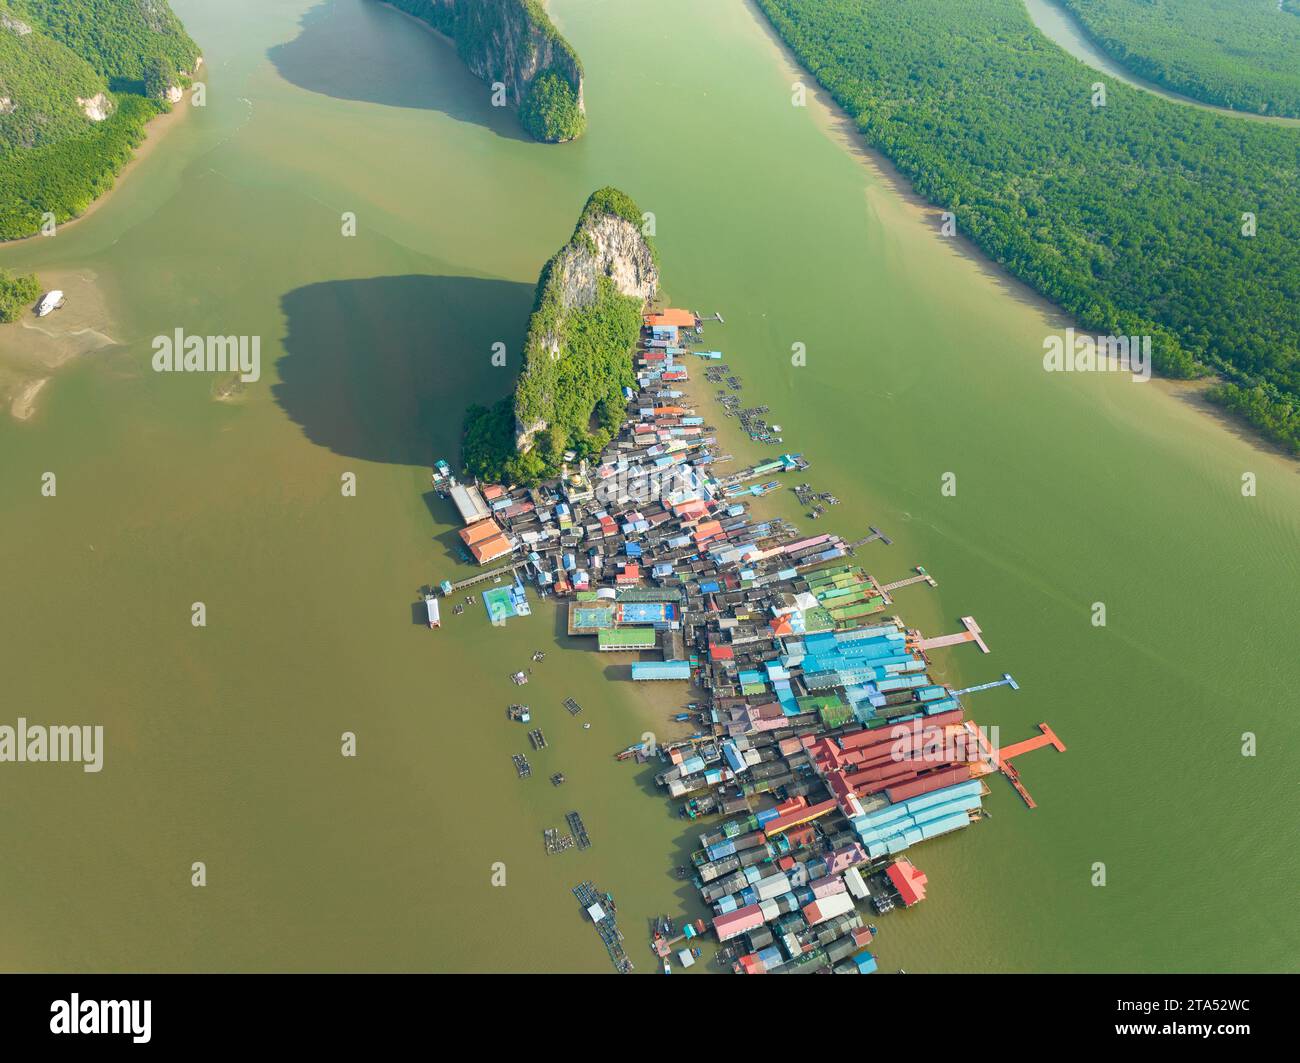 Vue aérienne de l'île de Panyee à Phang Nga Thaïlande, vue à grand angle Village flottant, île de village de pêcheurs Koh Panyee à Phang Nga, Thaïlande Banque D'Images